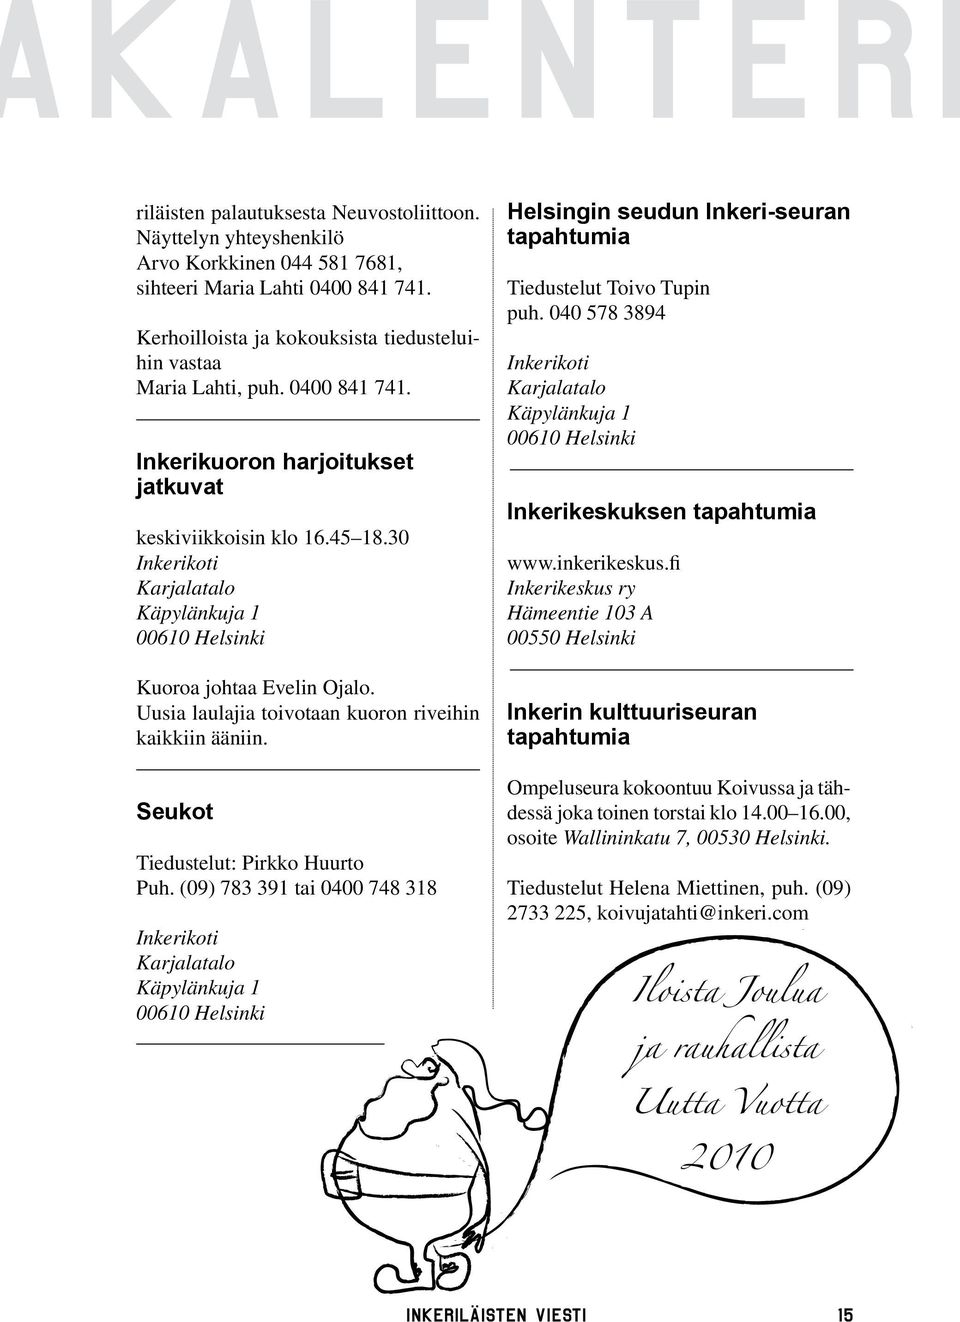 30 Inkerikoti Karjalatalo Käpylänkuja 1 00610 Helsinki Kuoroa johtaa Evelin Ojalo. Uusia laulajia toivotaan kuoron riveihin kaikkiin ääniin.